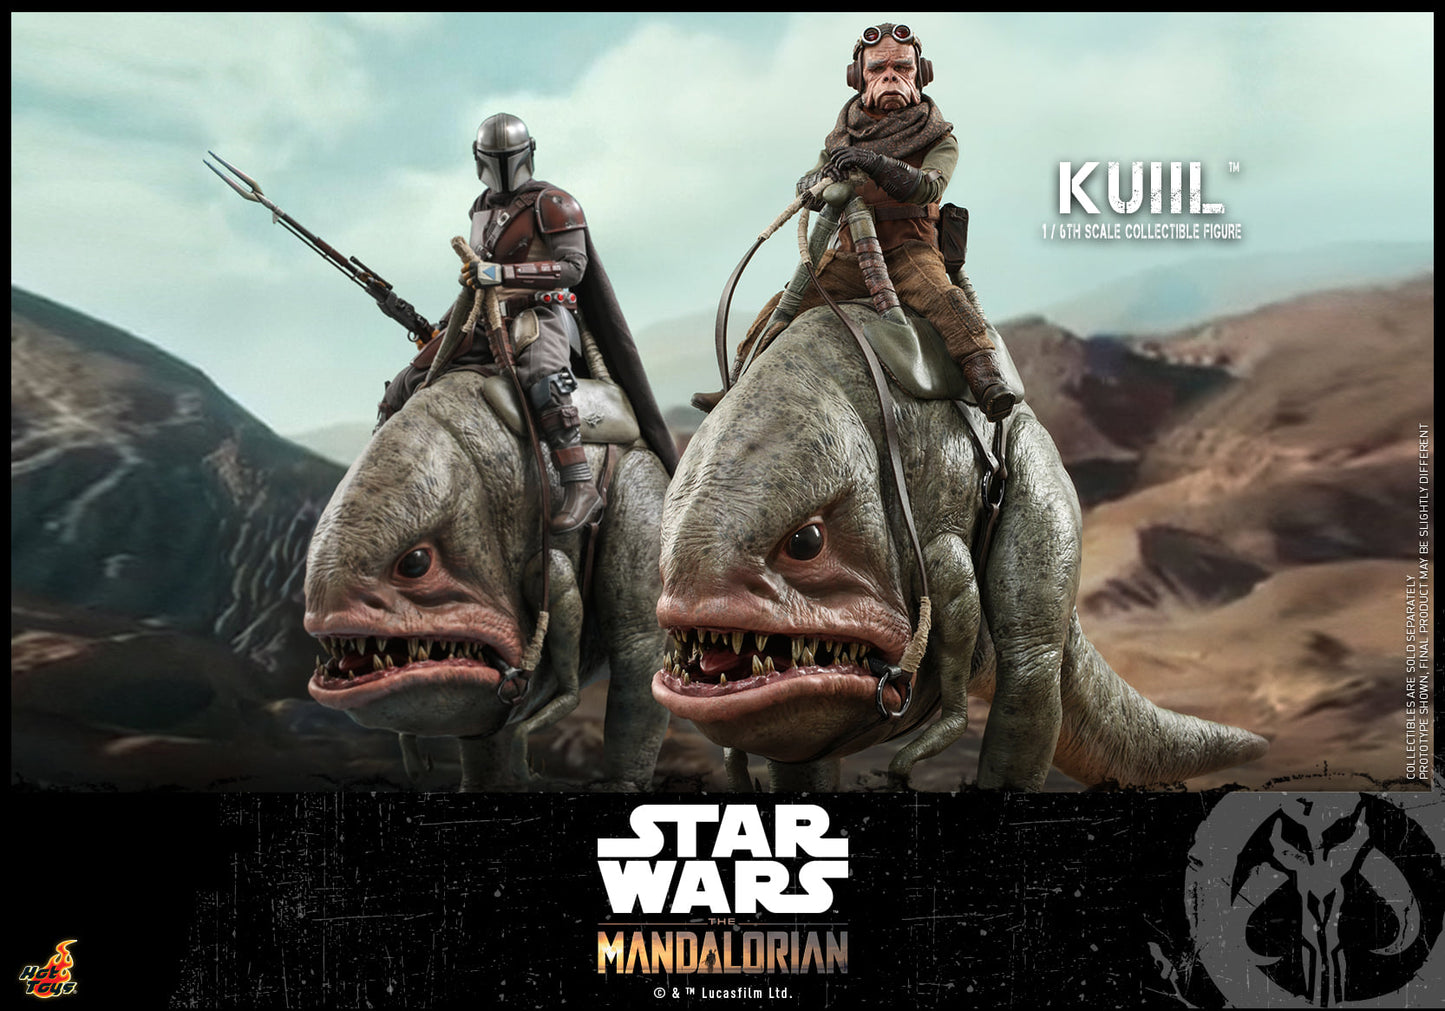 Hot Toys TMS048 1/6 Star Wars: The Mandalorian? - Kuiil